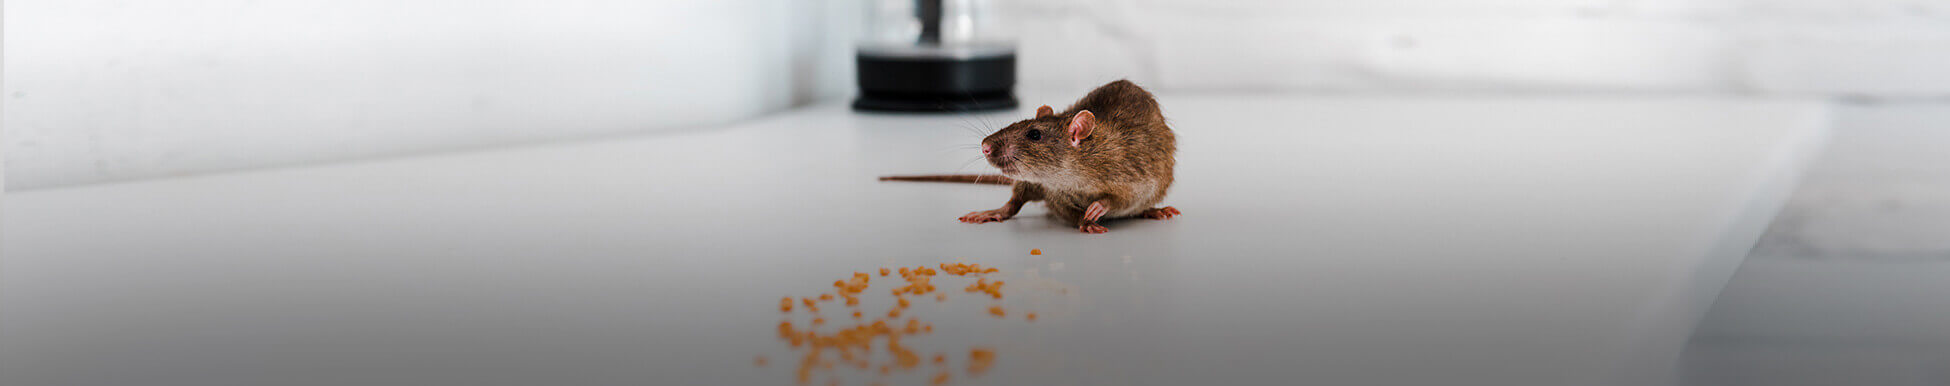 לוכד עכברים מחיר מ-300 ₪ [פריסה ארצית - 30 דקות הגעה]☑️